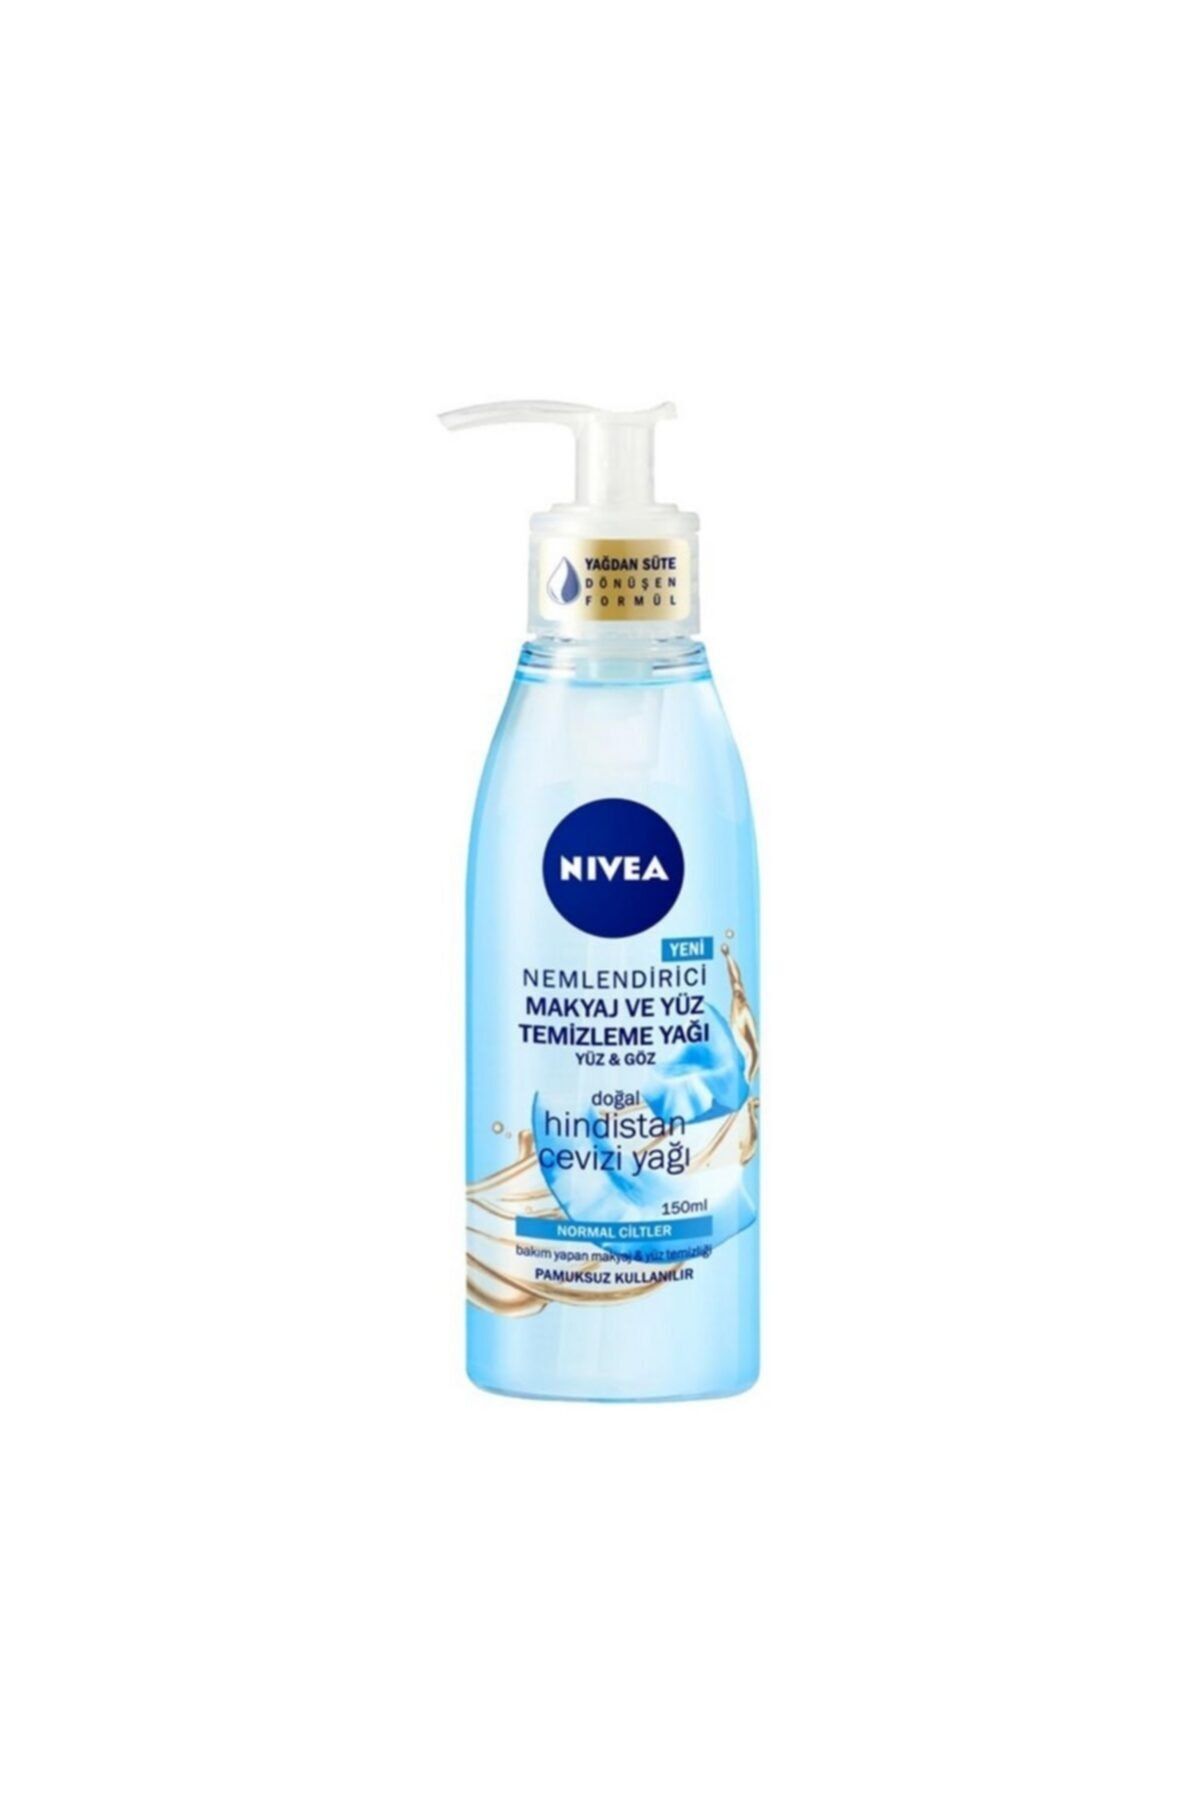 NIVEA Nf Yüz Temizleme Yağı Normal Cilt 150 ml